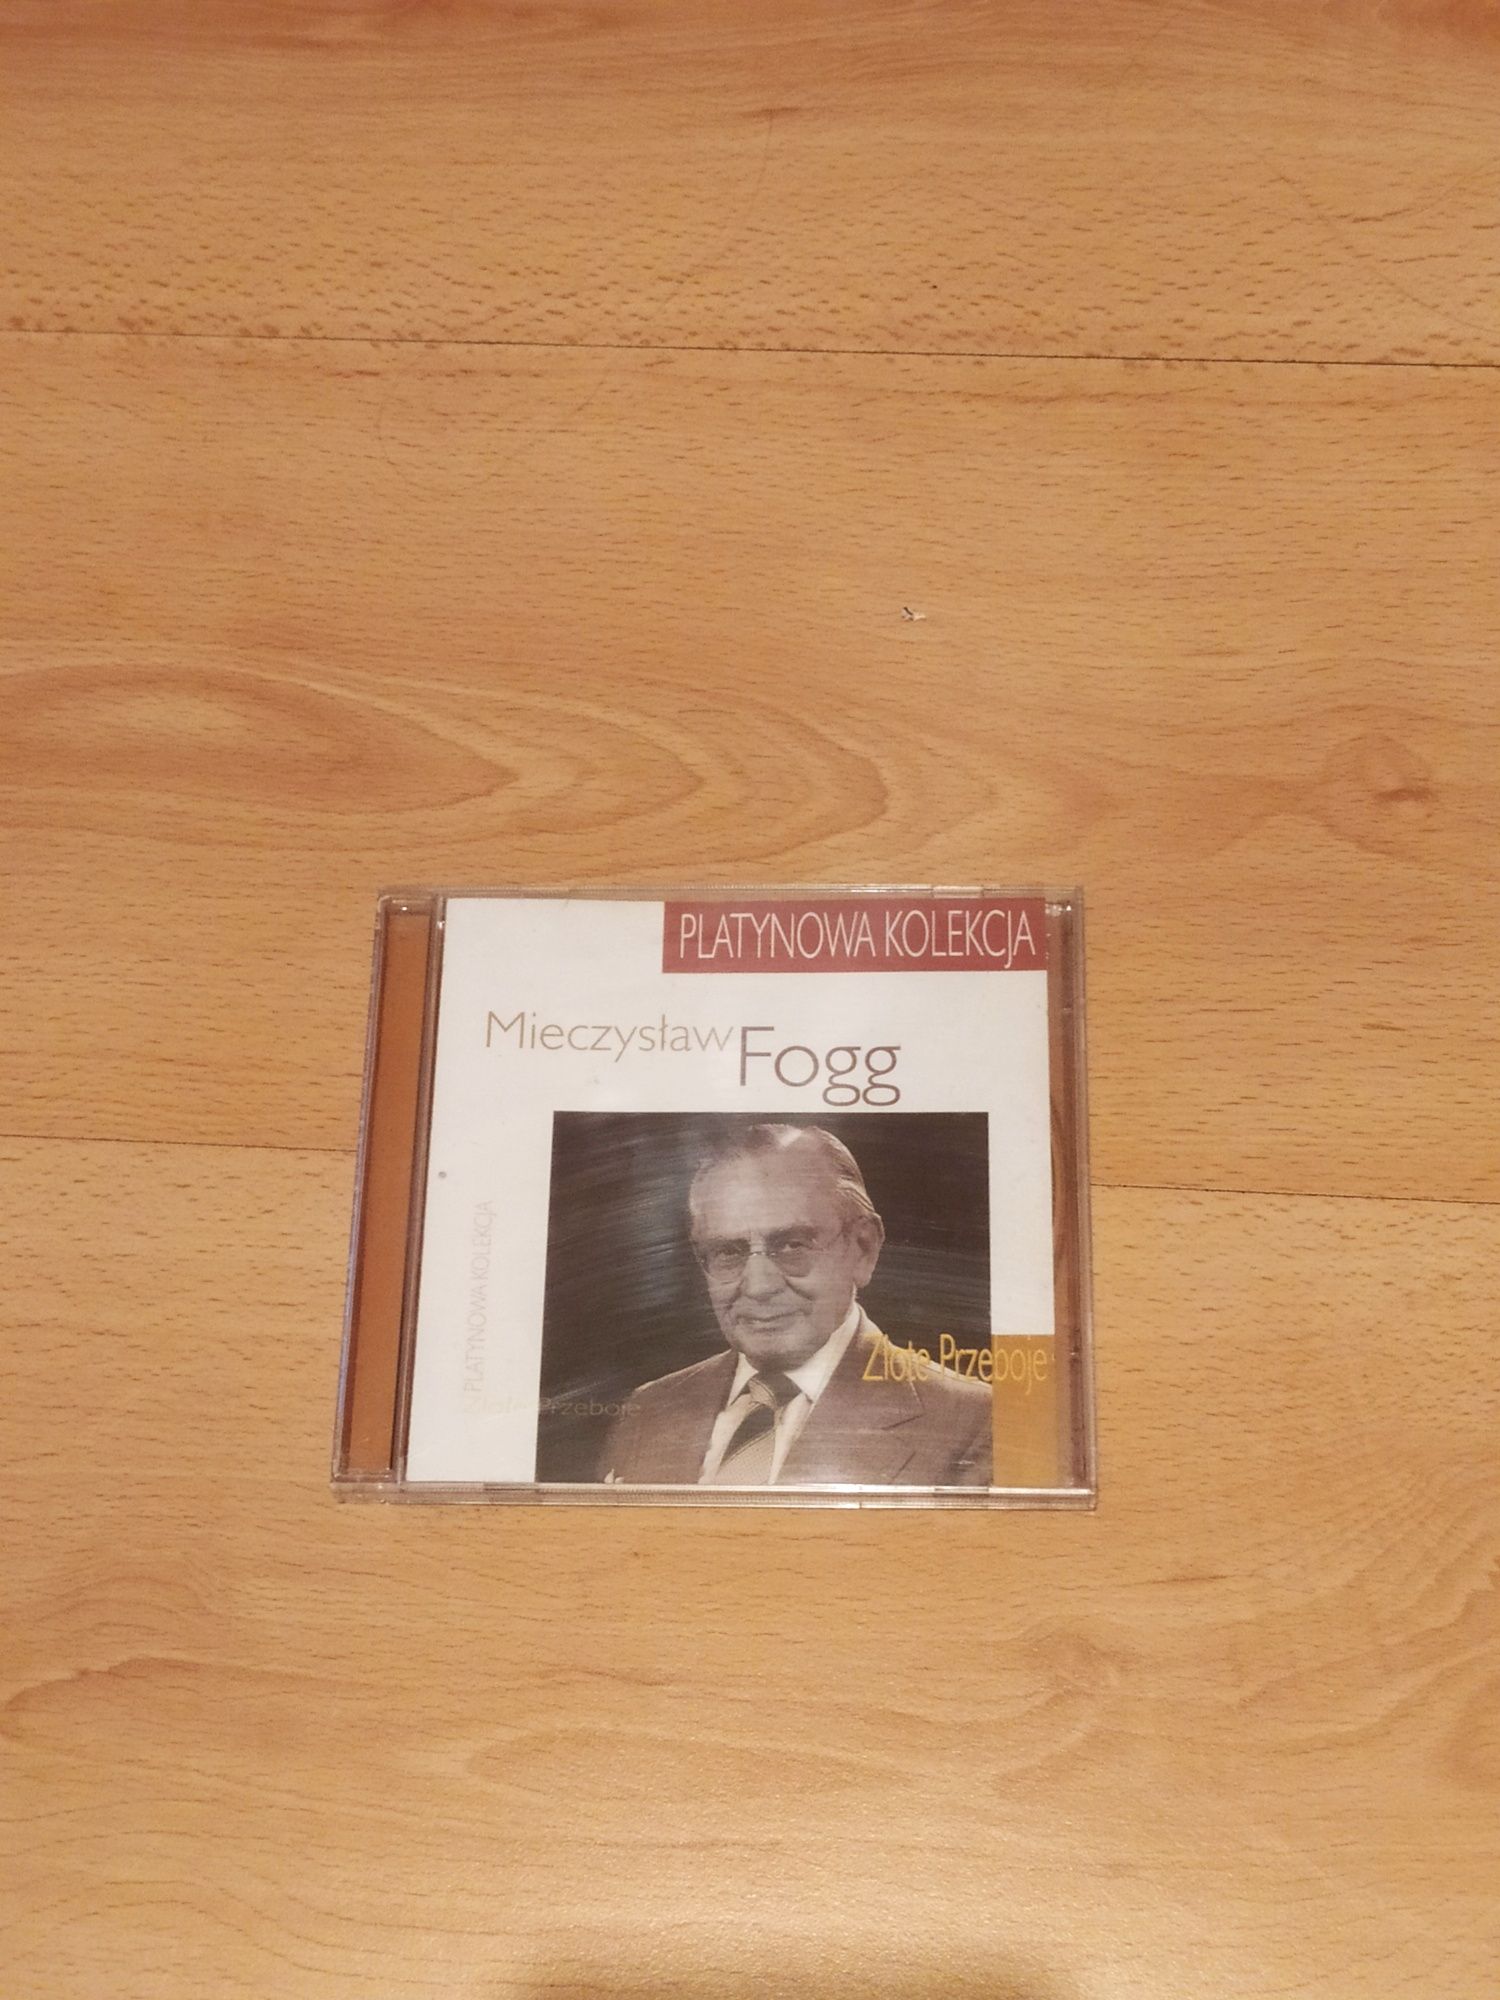 Mieczysław Fogg CD